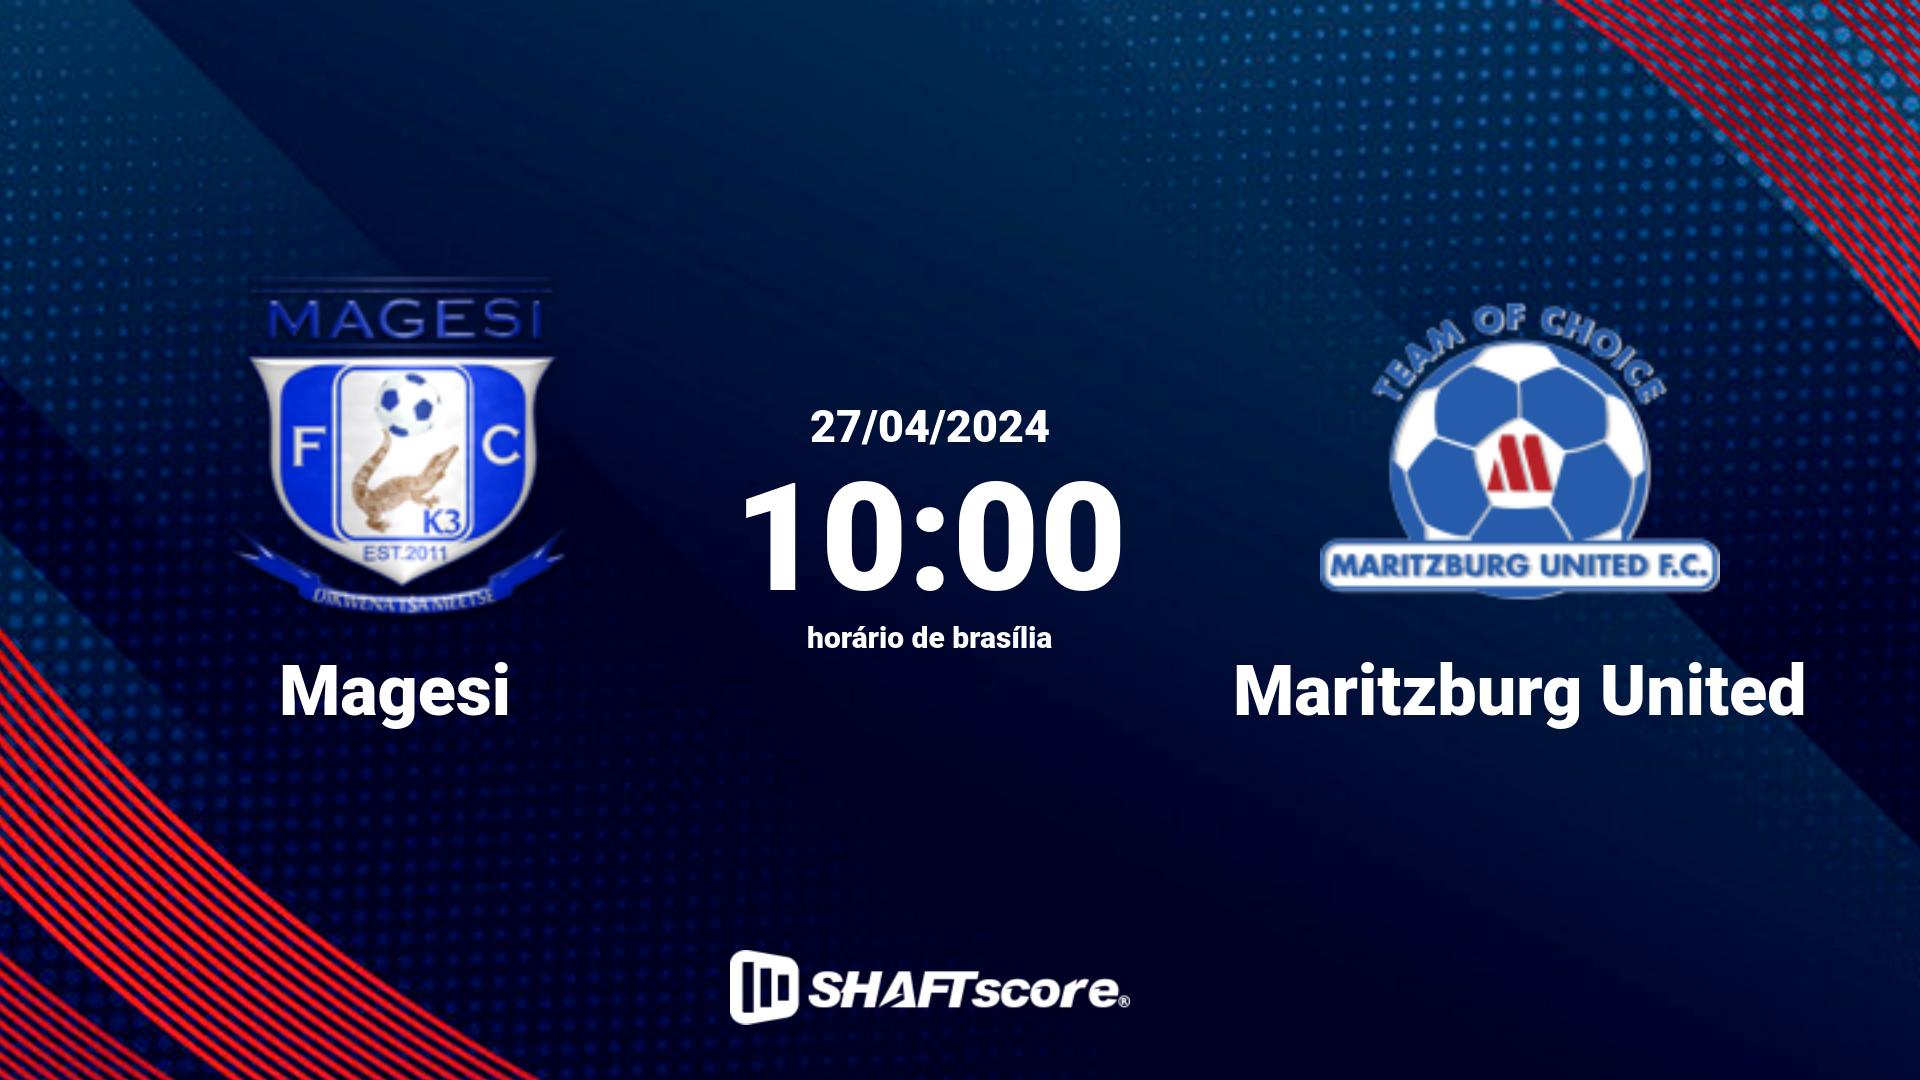 Estatísticas do jogo Magesi vs Maritzburg United 27.04 10:00